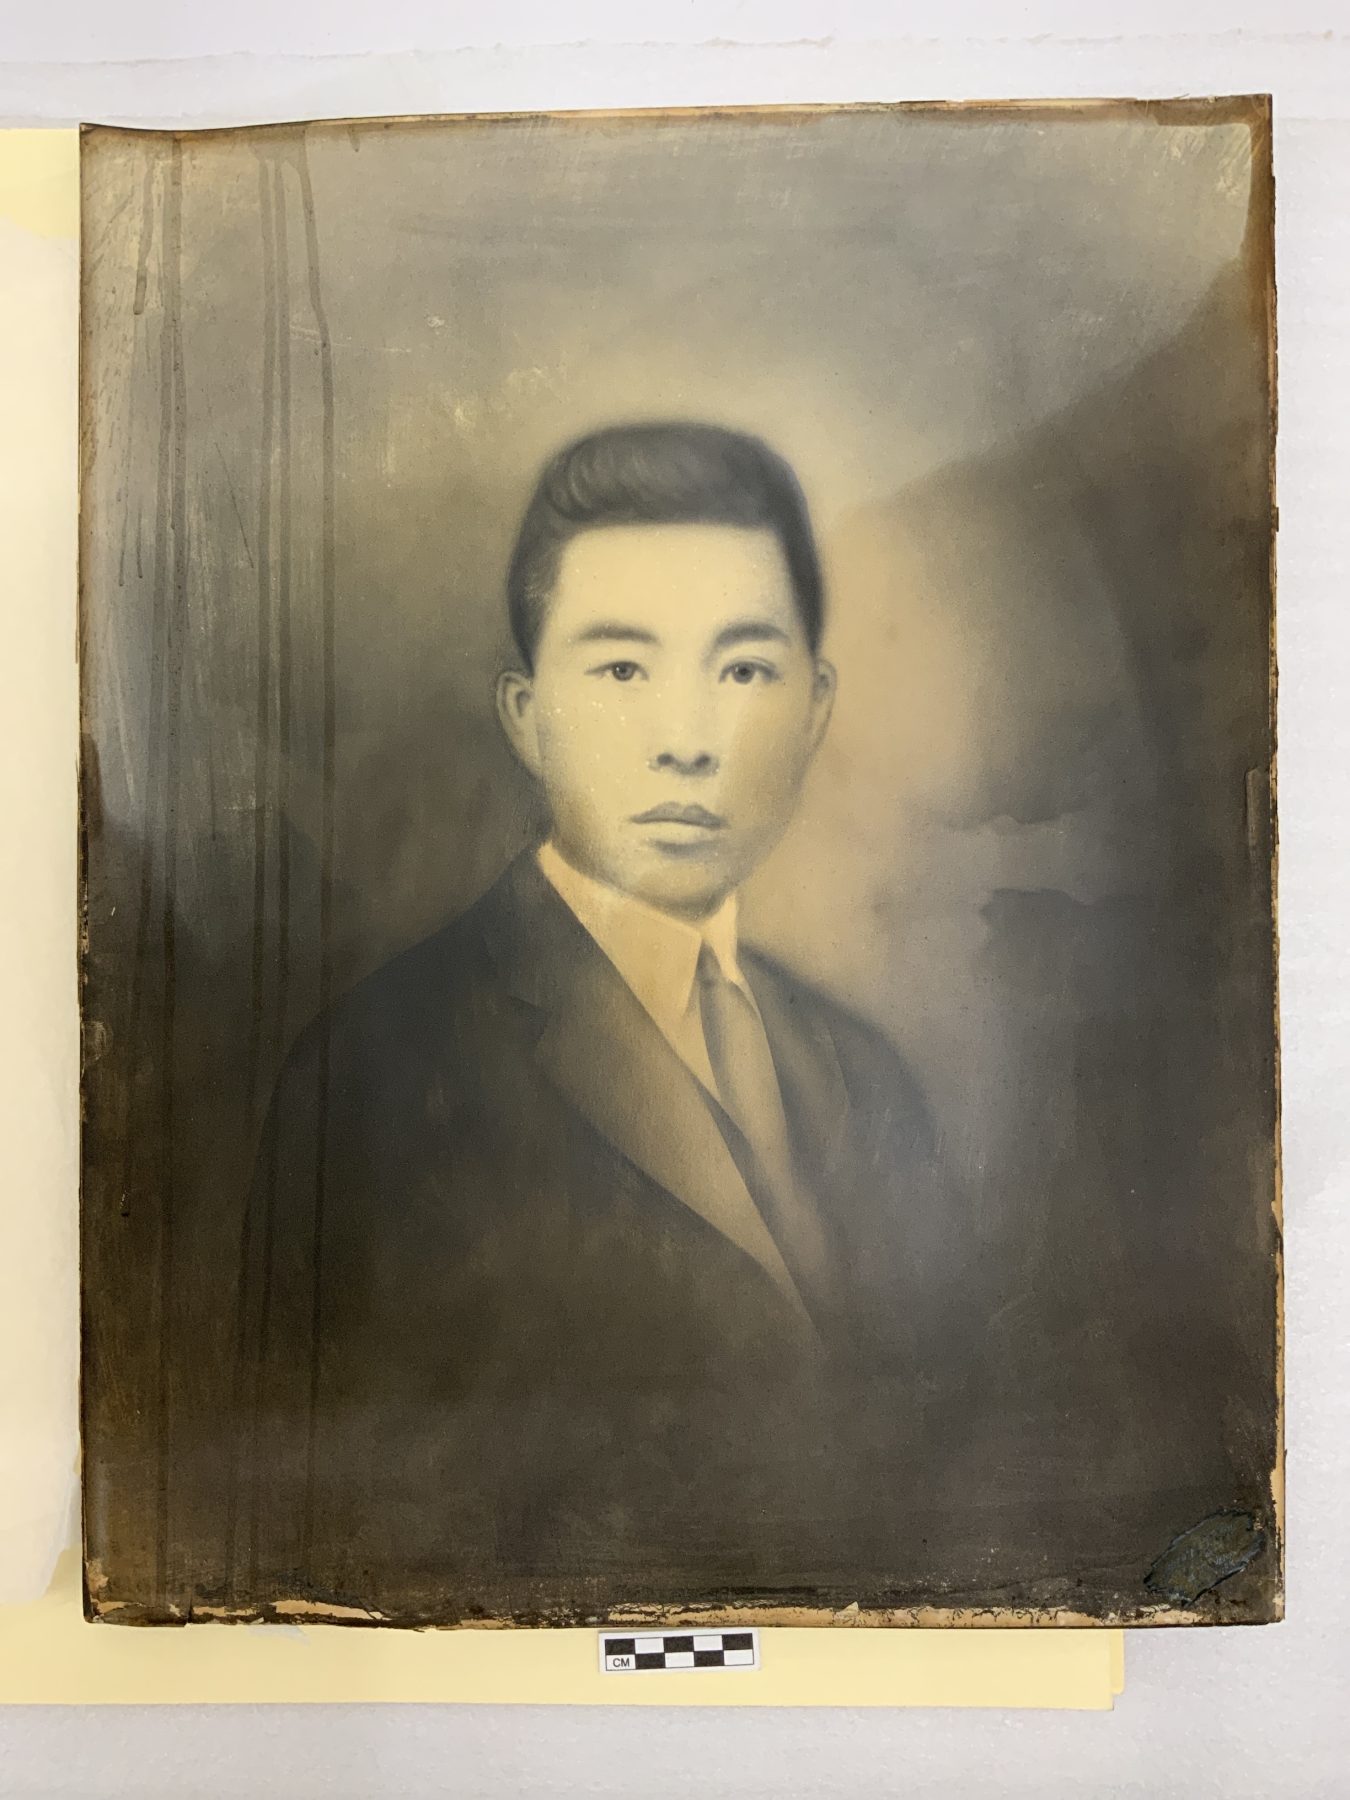 2006.203.824 蜡笔肖像，可能是陈氏家族成员，约1860 年代至 1910 年代。由谢陈雪瑛捐赠，美国华人博物馆 (MOCA) 馆藏。